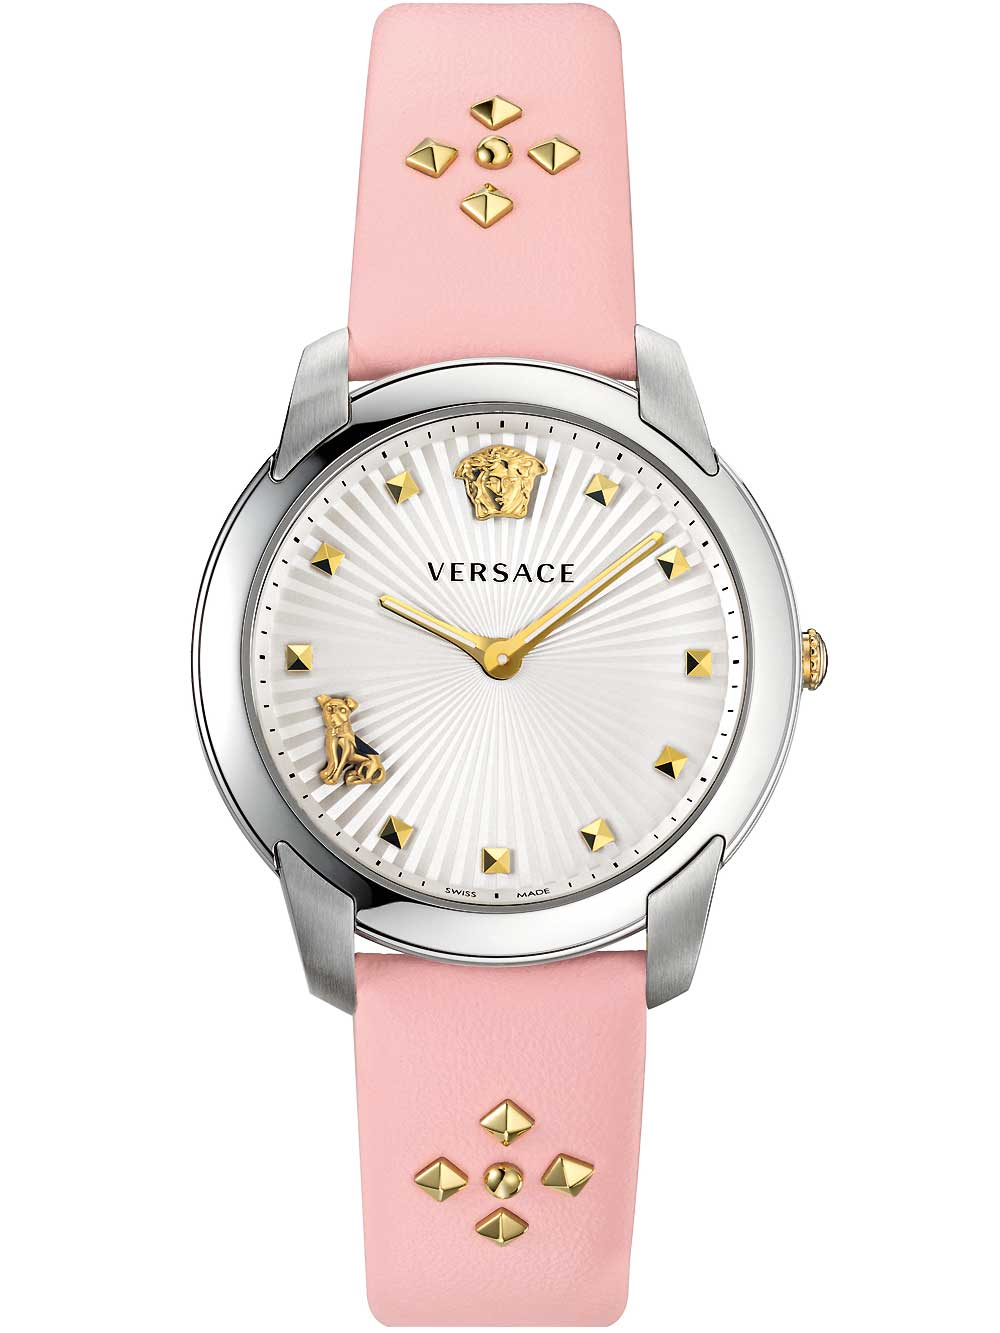 Dámské hodinky Versace VELR00119 Audrey